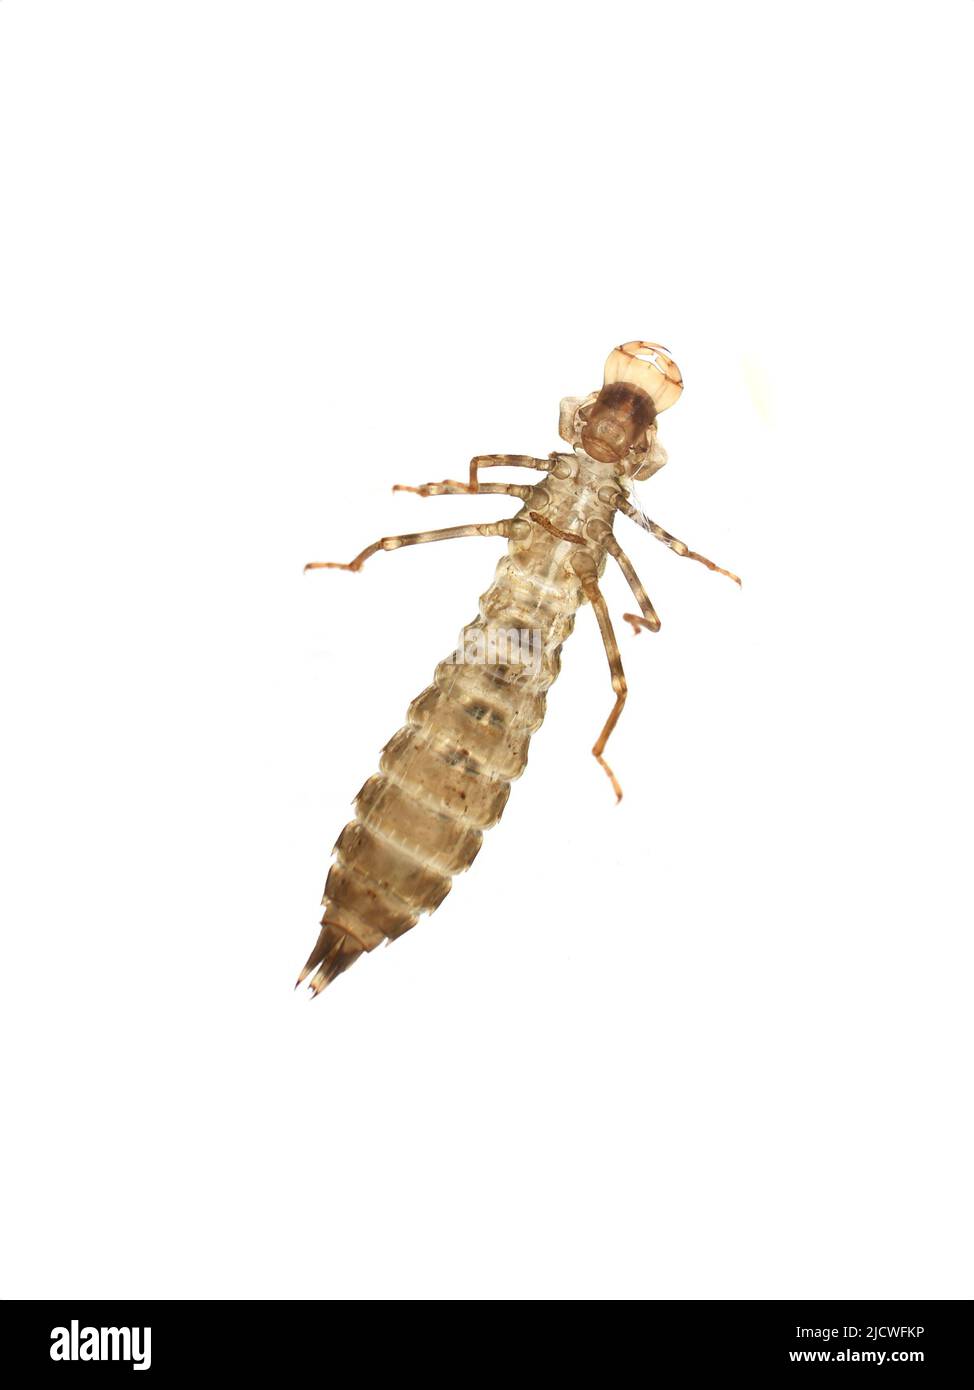 La peau vide de nymphe hantée d'une libellule émergée sous le côté isolé sur fond blanc Banque D'Images